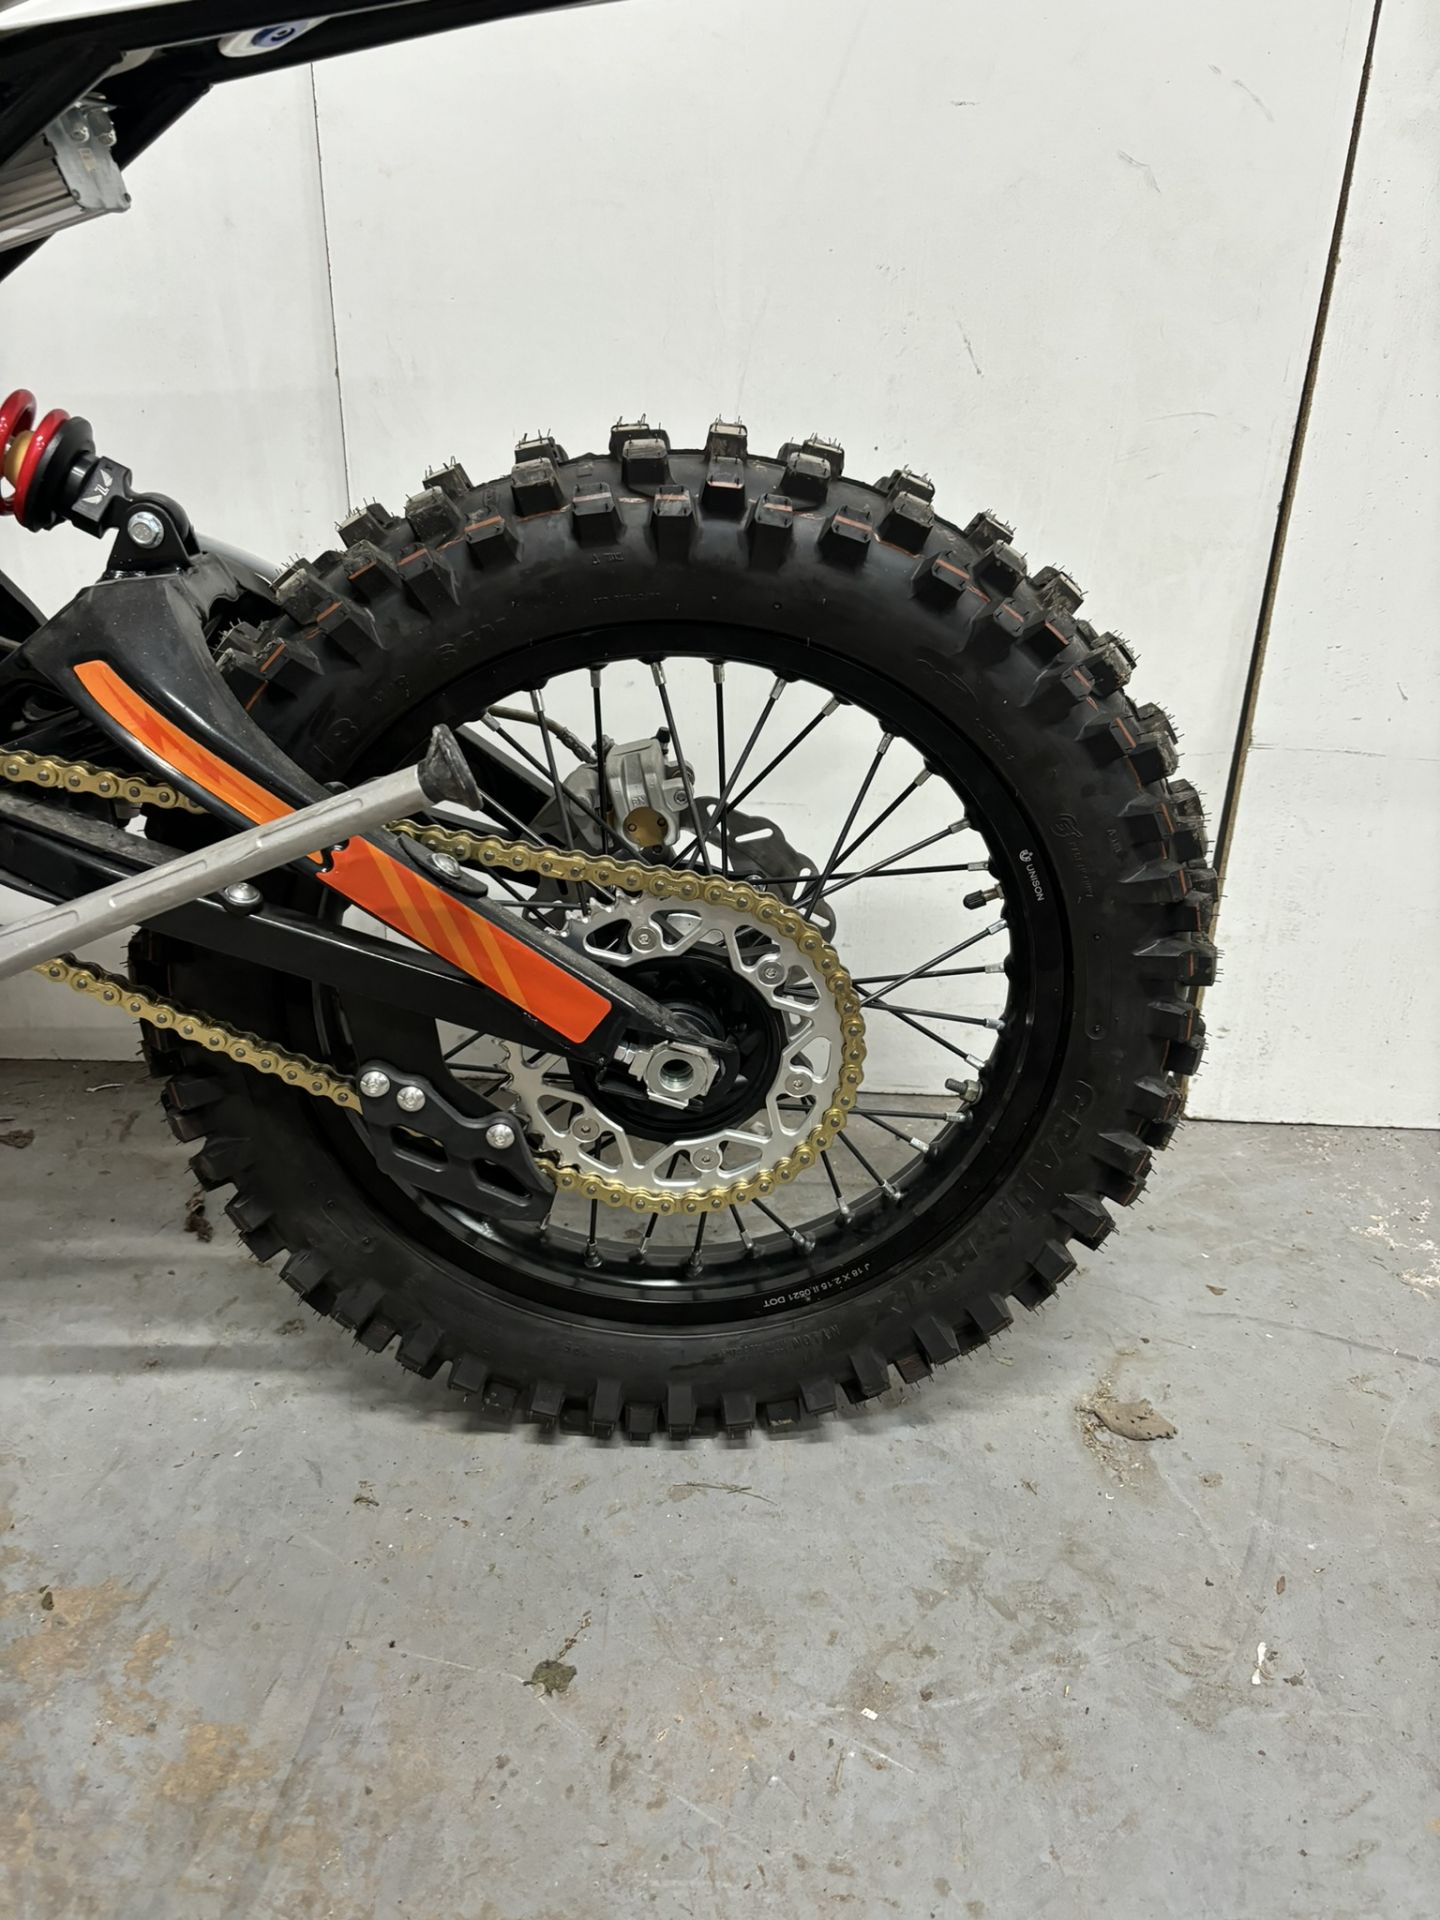 Velimotor VMX12 Electric Motorcycle / Dirt Bike - Image 4 of 24